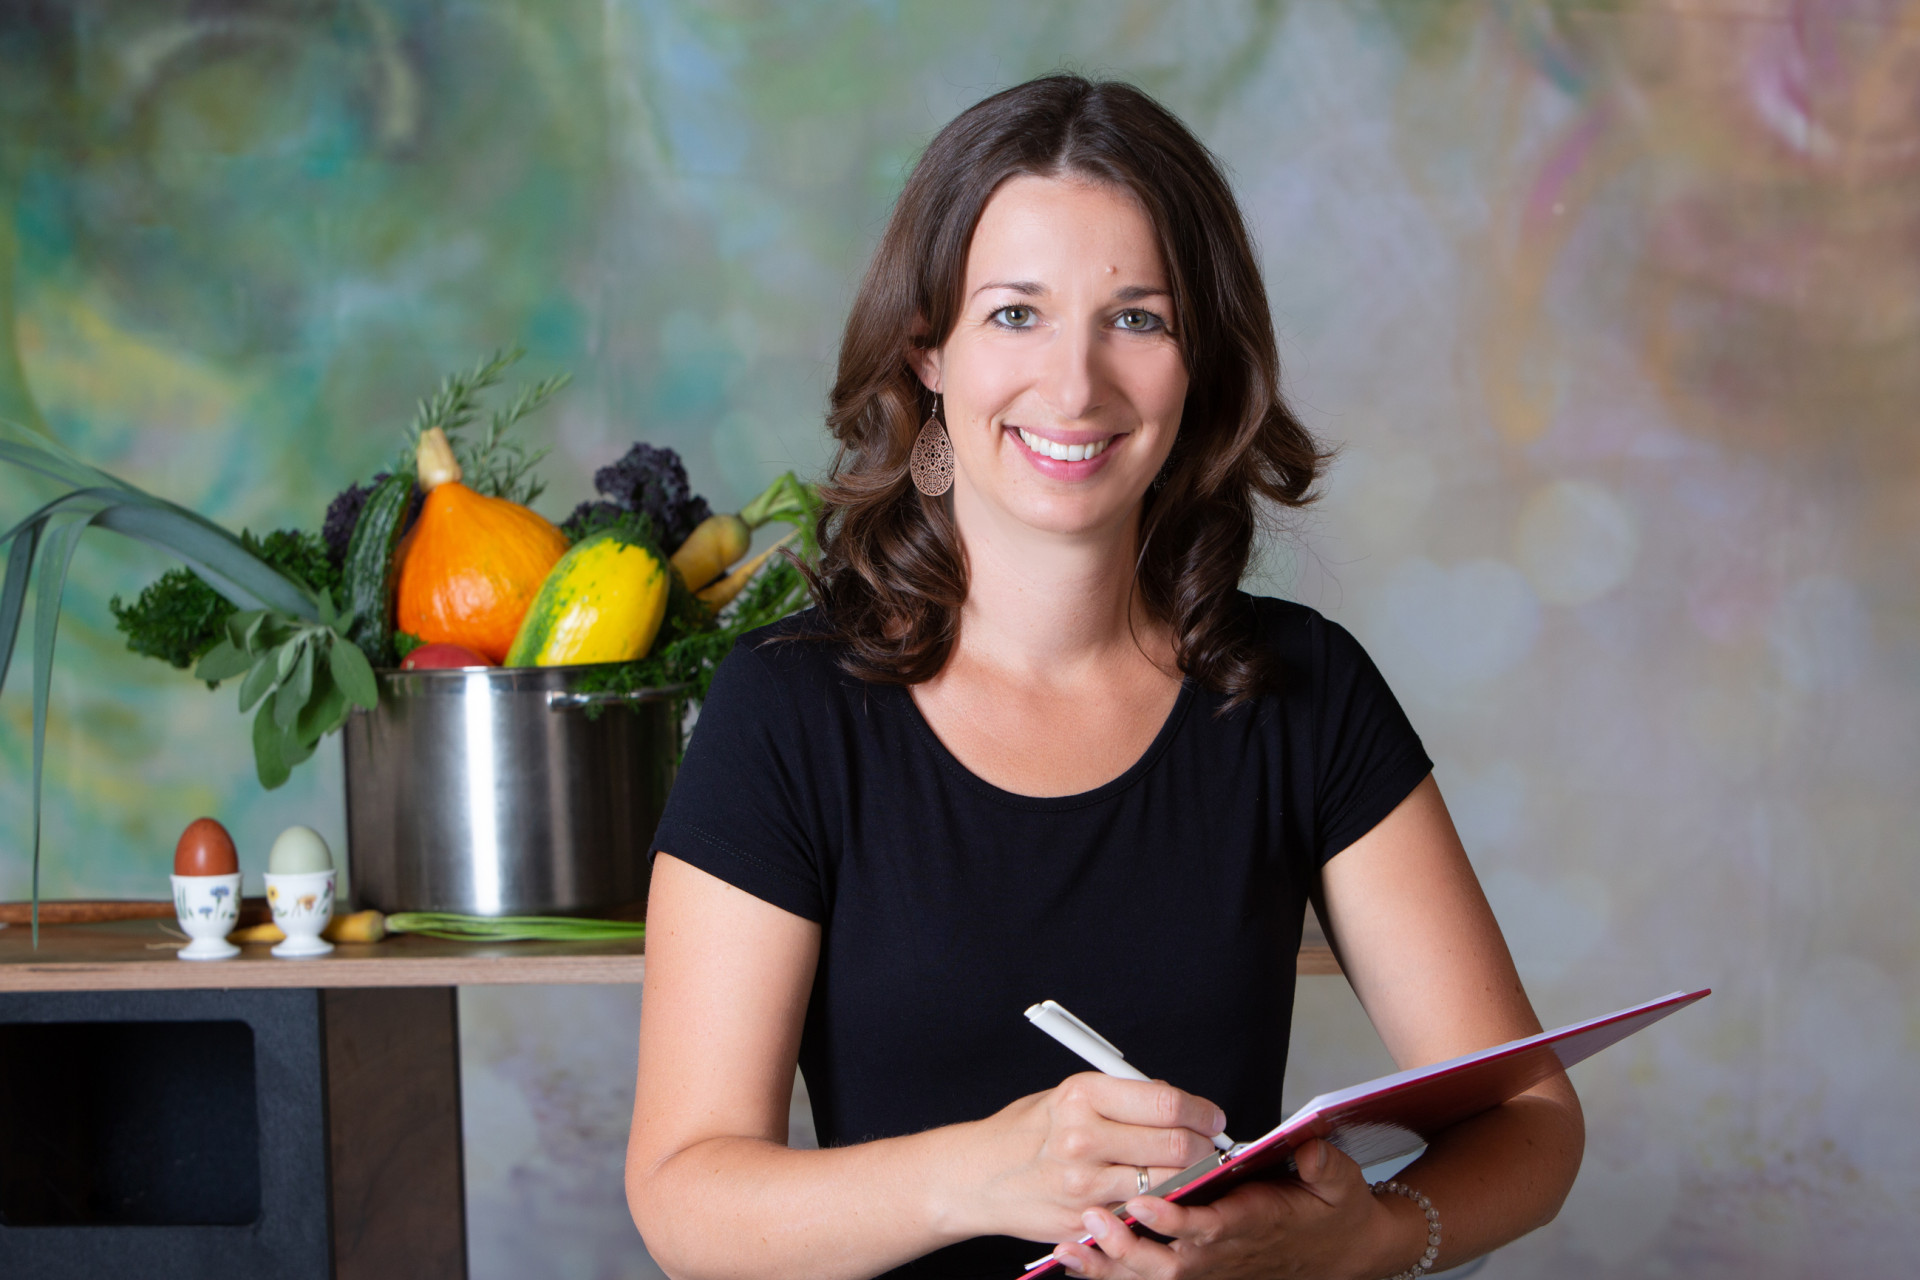 Lisa's Erfolgsstory - Die Betriebswirtin, die ihre Leidenschaft für "gesunde Ernährung" zum Beruf gemacht hat!